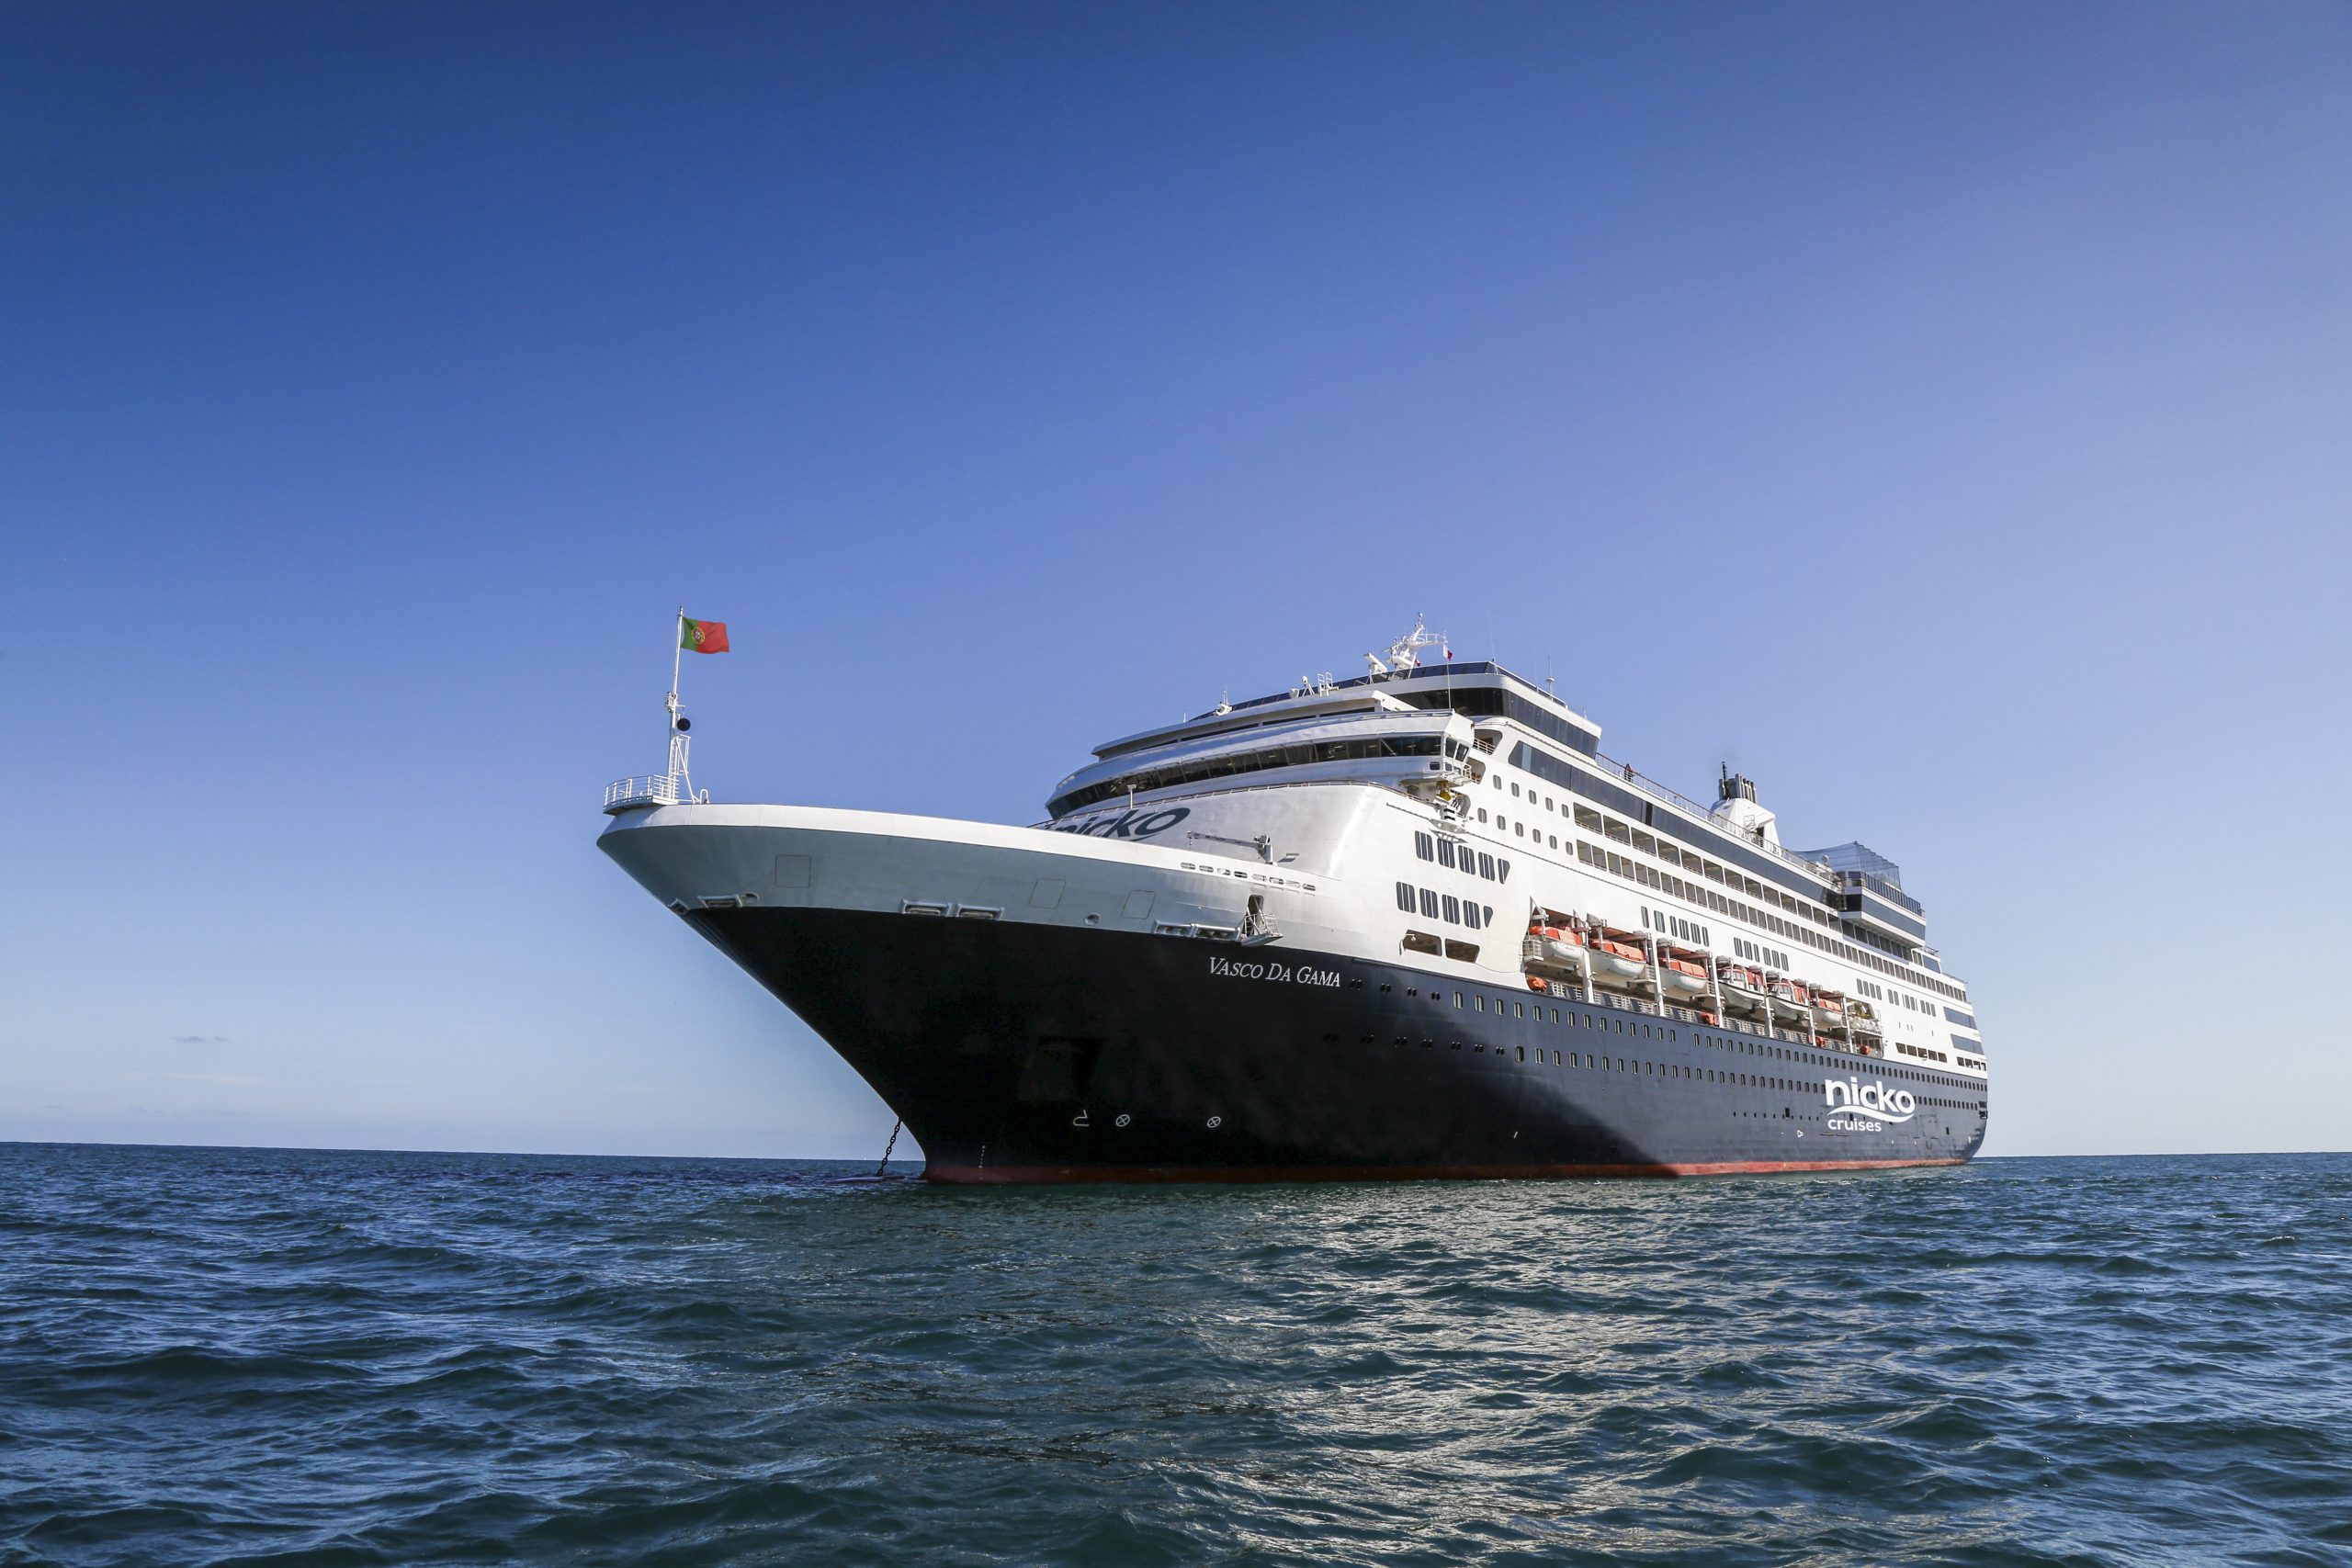 nicko cruises legt seinen seinen Einführungskatalog zum Flotten-Neuzugang VASCO DA GAMA vor. Ab 22. Januar sind die Reisen online zu finden und buchbar.